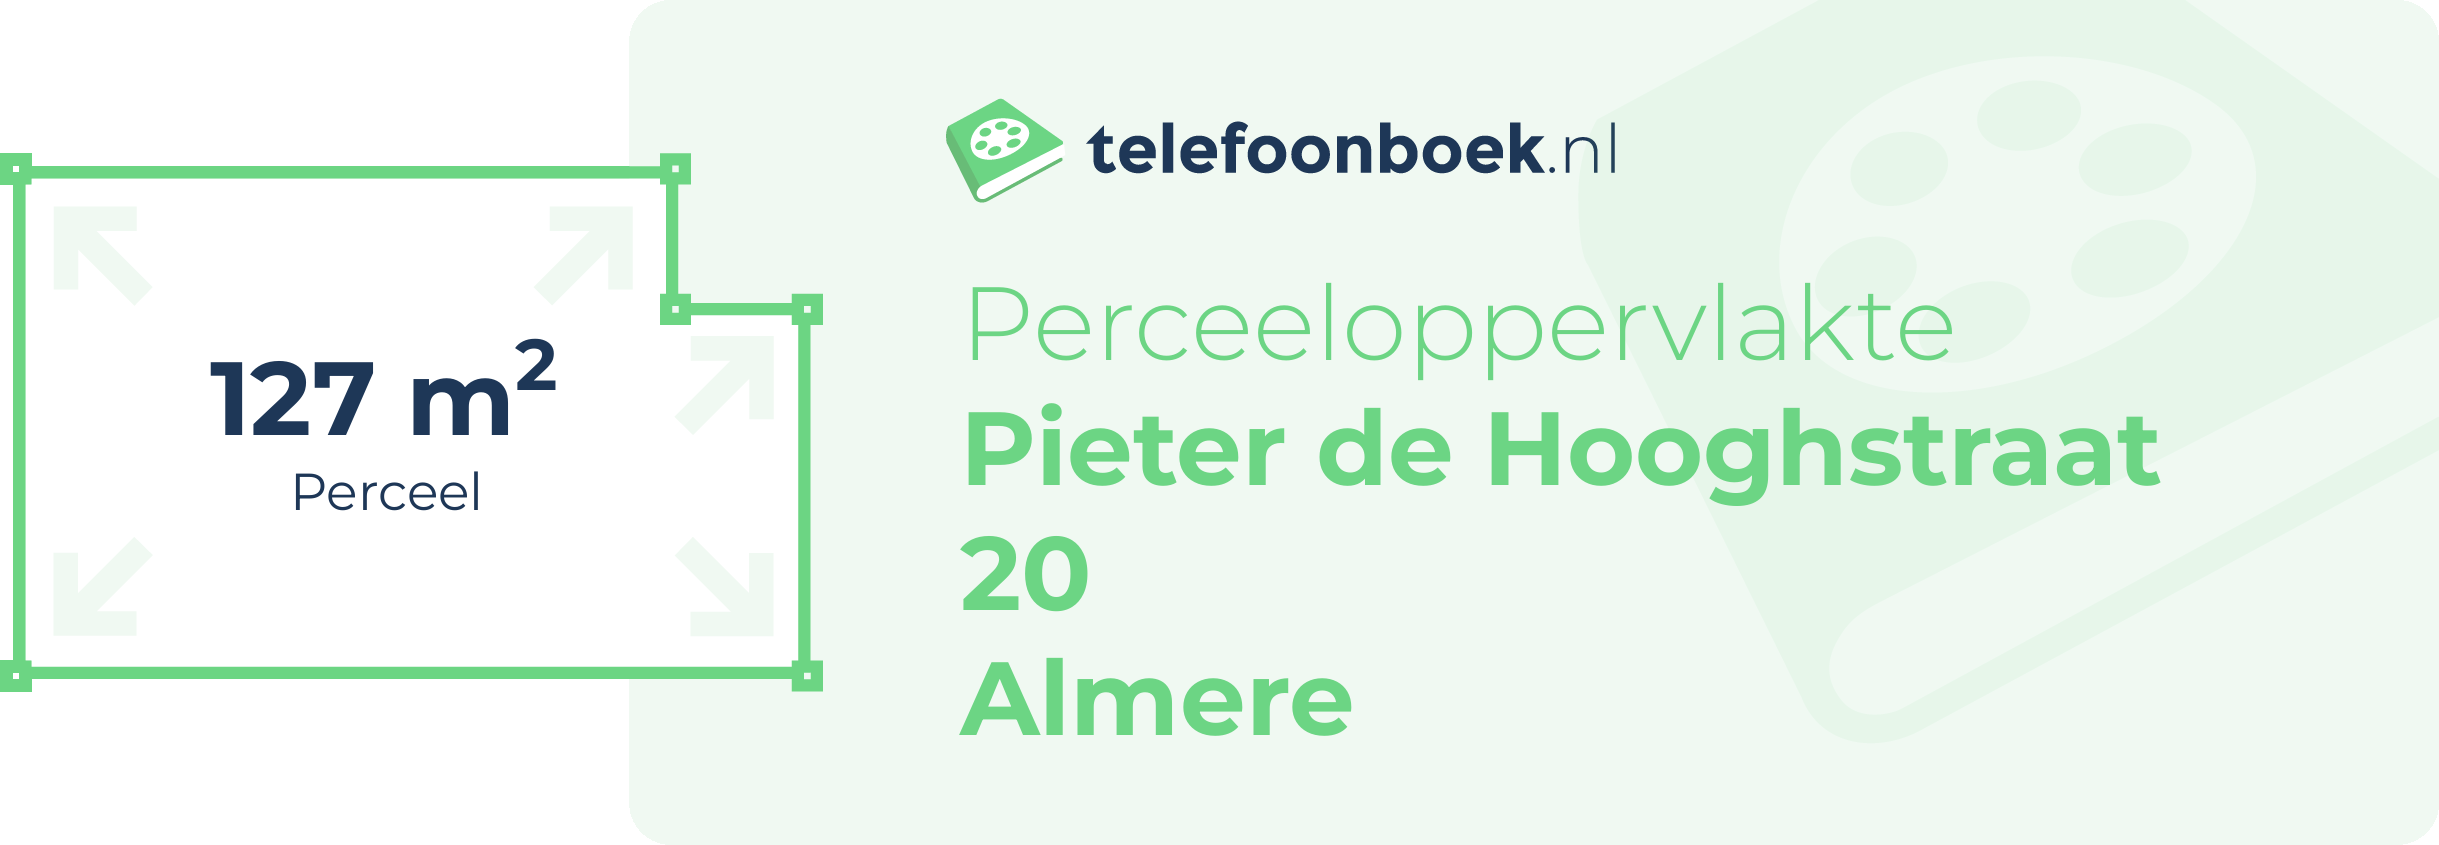 Perceeloppervlakte Pieter De Hooghstraat 20 Almere